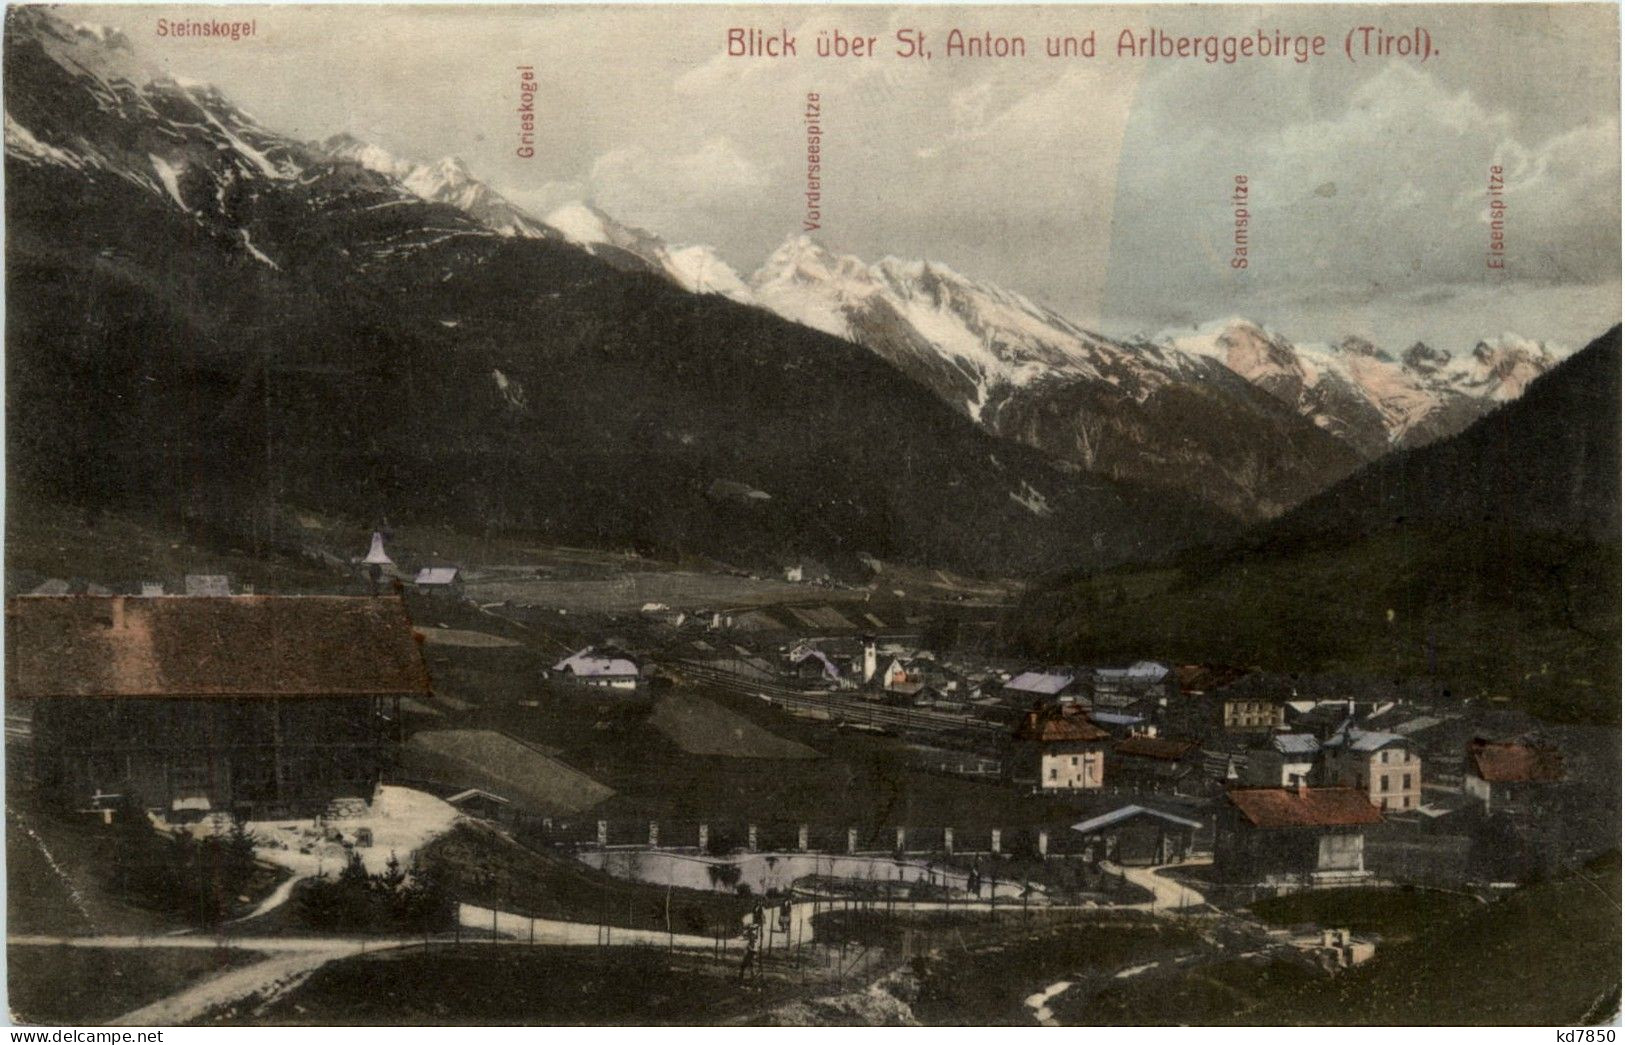 St.Anton Am Arlberg/Tirol - St.Anton, Blick über Arlberggebirge - St. Anton Am Arlberg